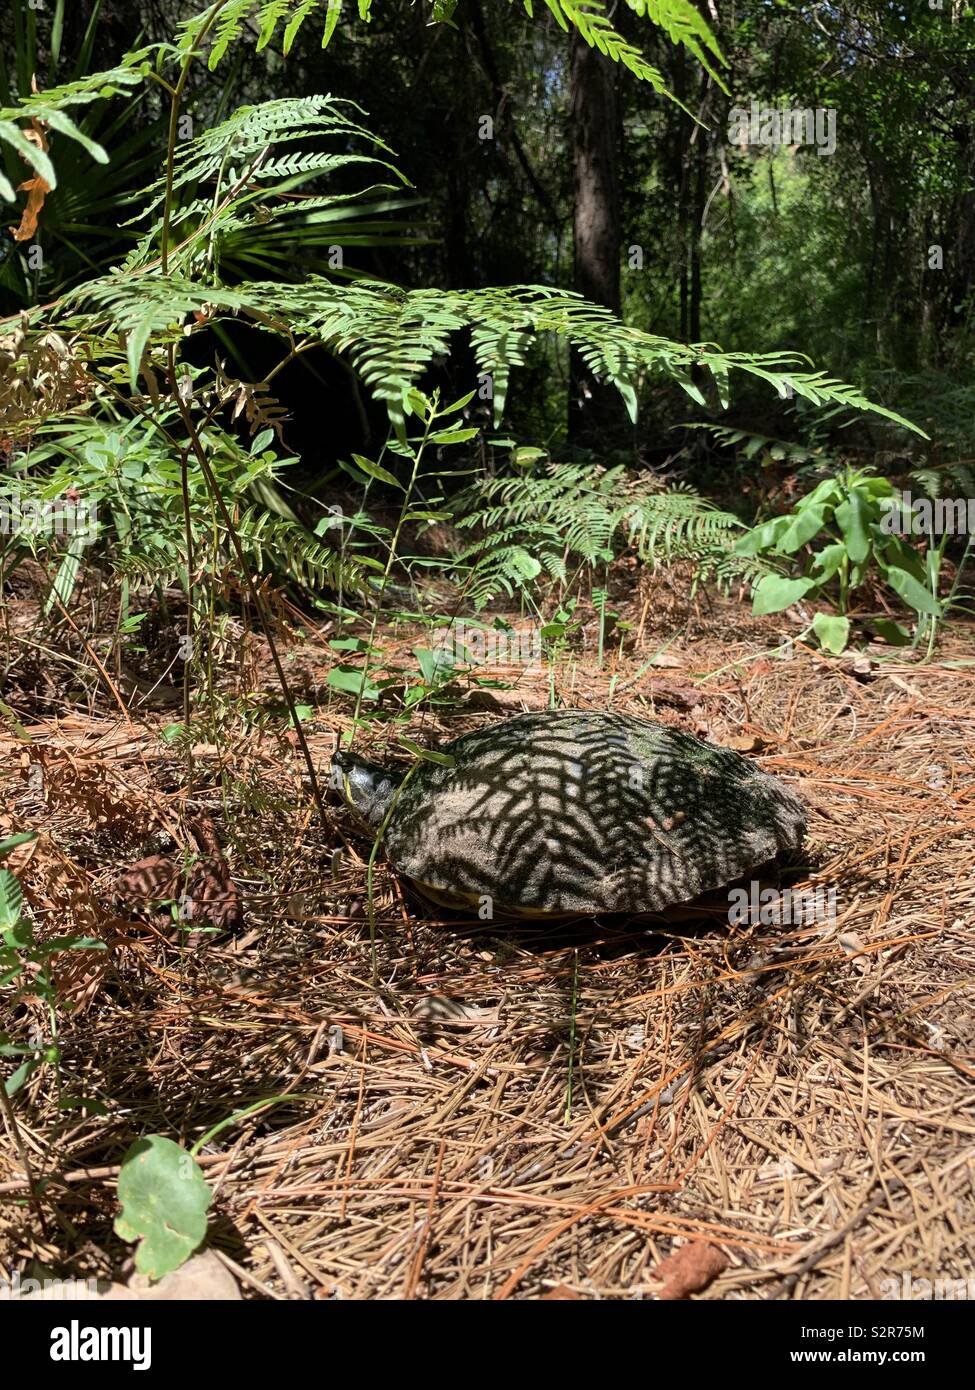 La tartaruga sul suolo della foresta di riposo in ombra di felce con riflessioni di felce sulla shell Foto Stock